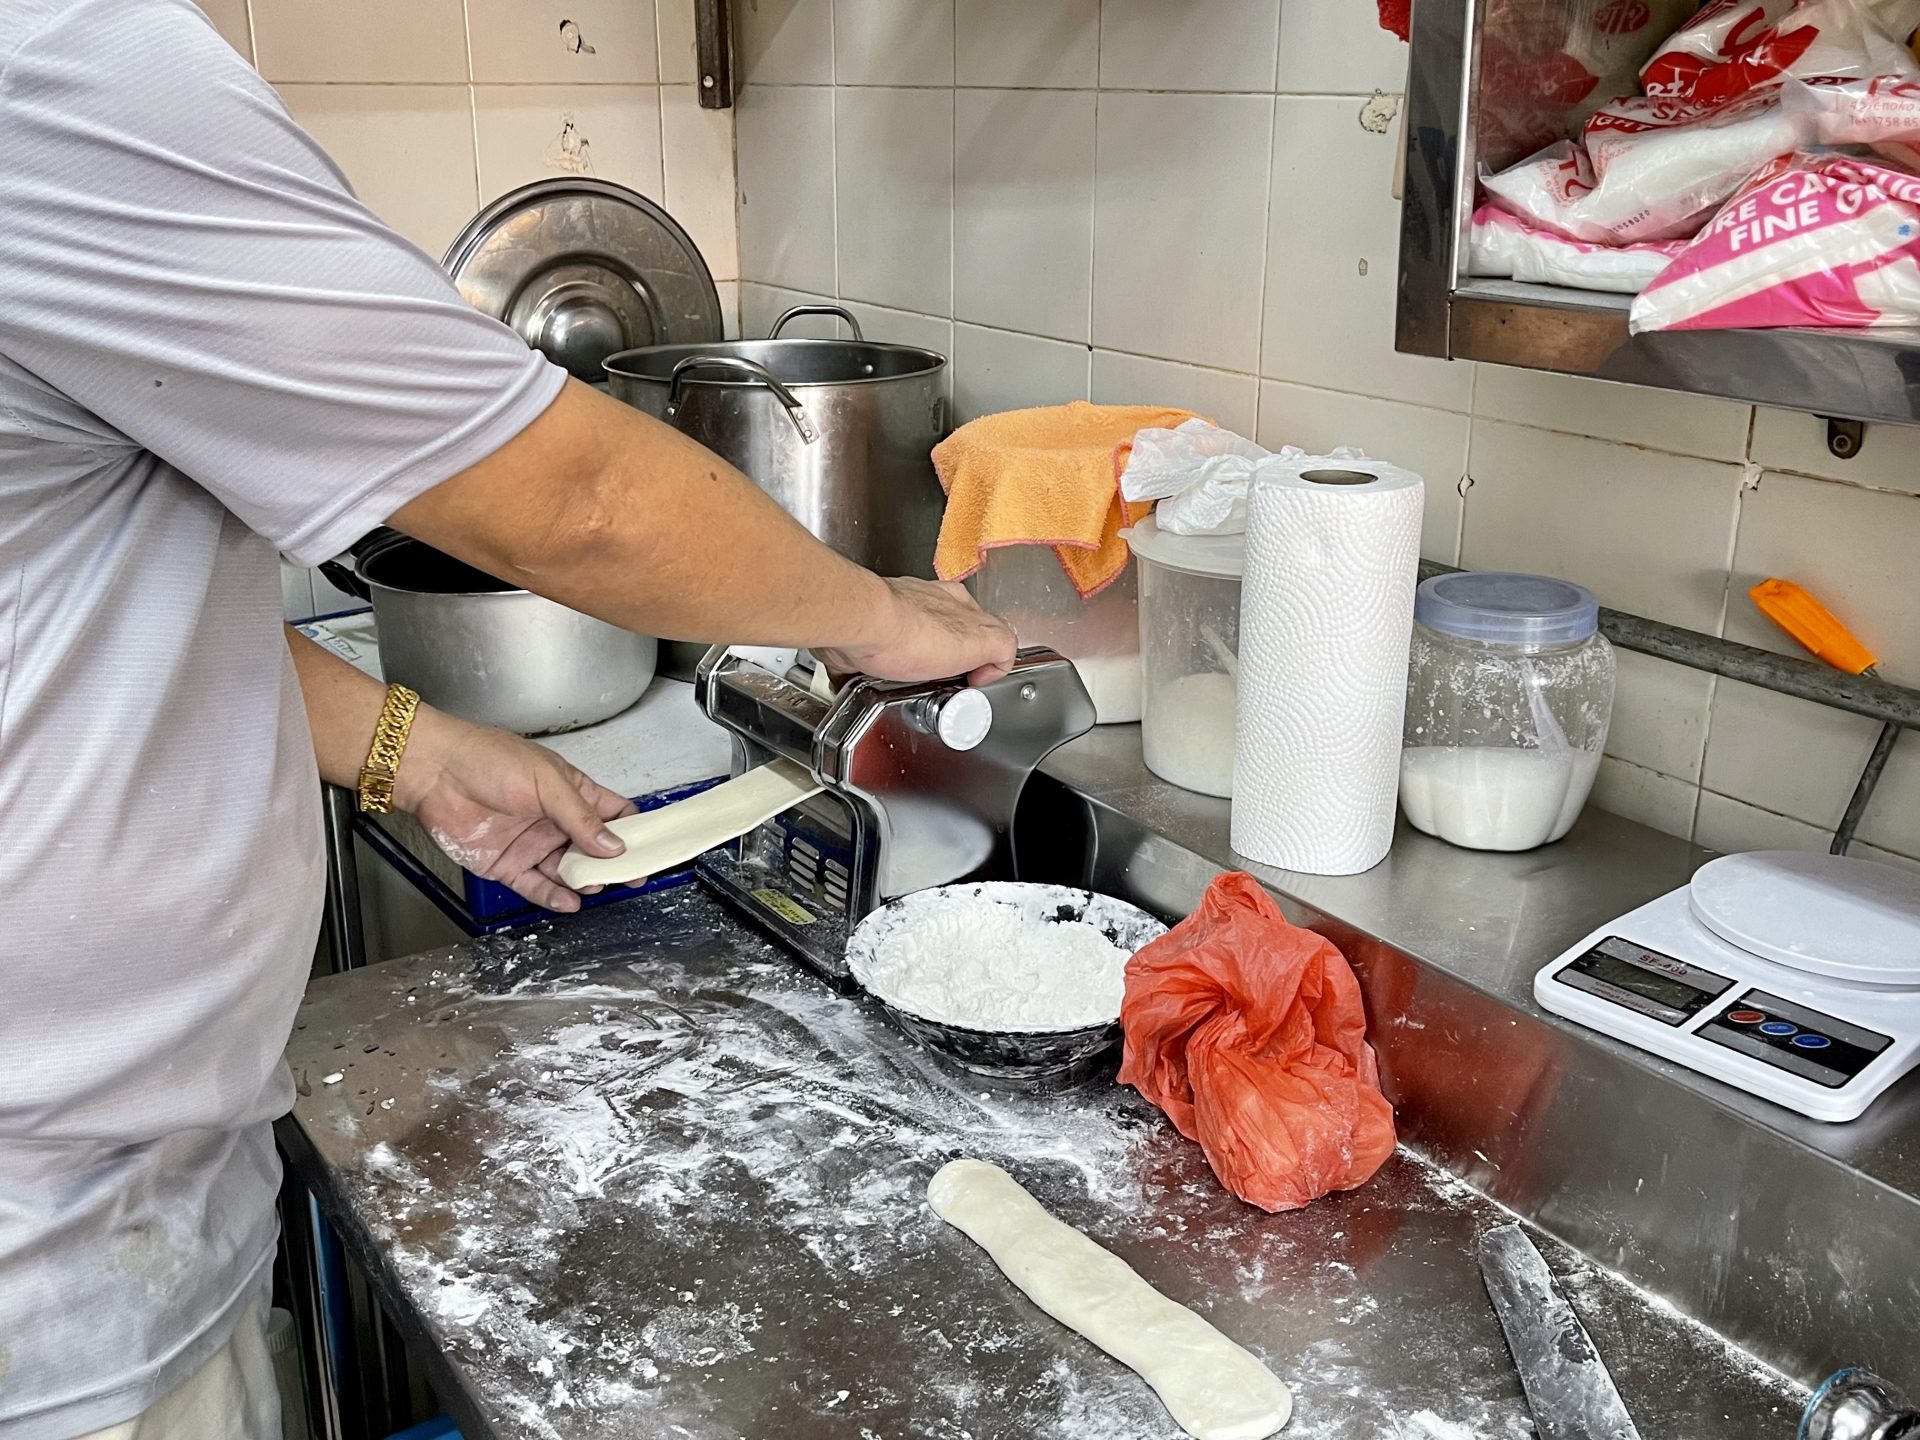 Penang Heng Heng Noodles - Making noodles